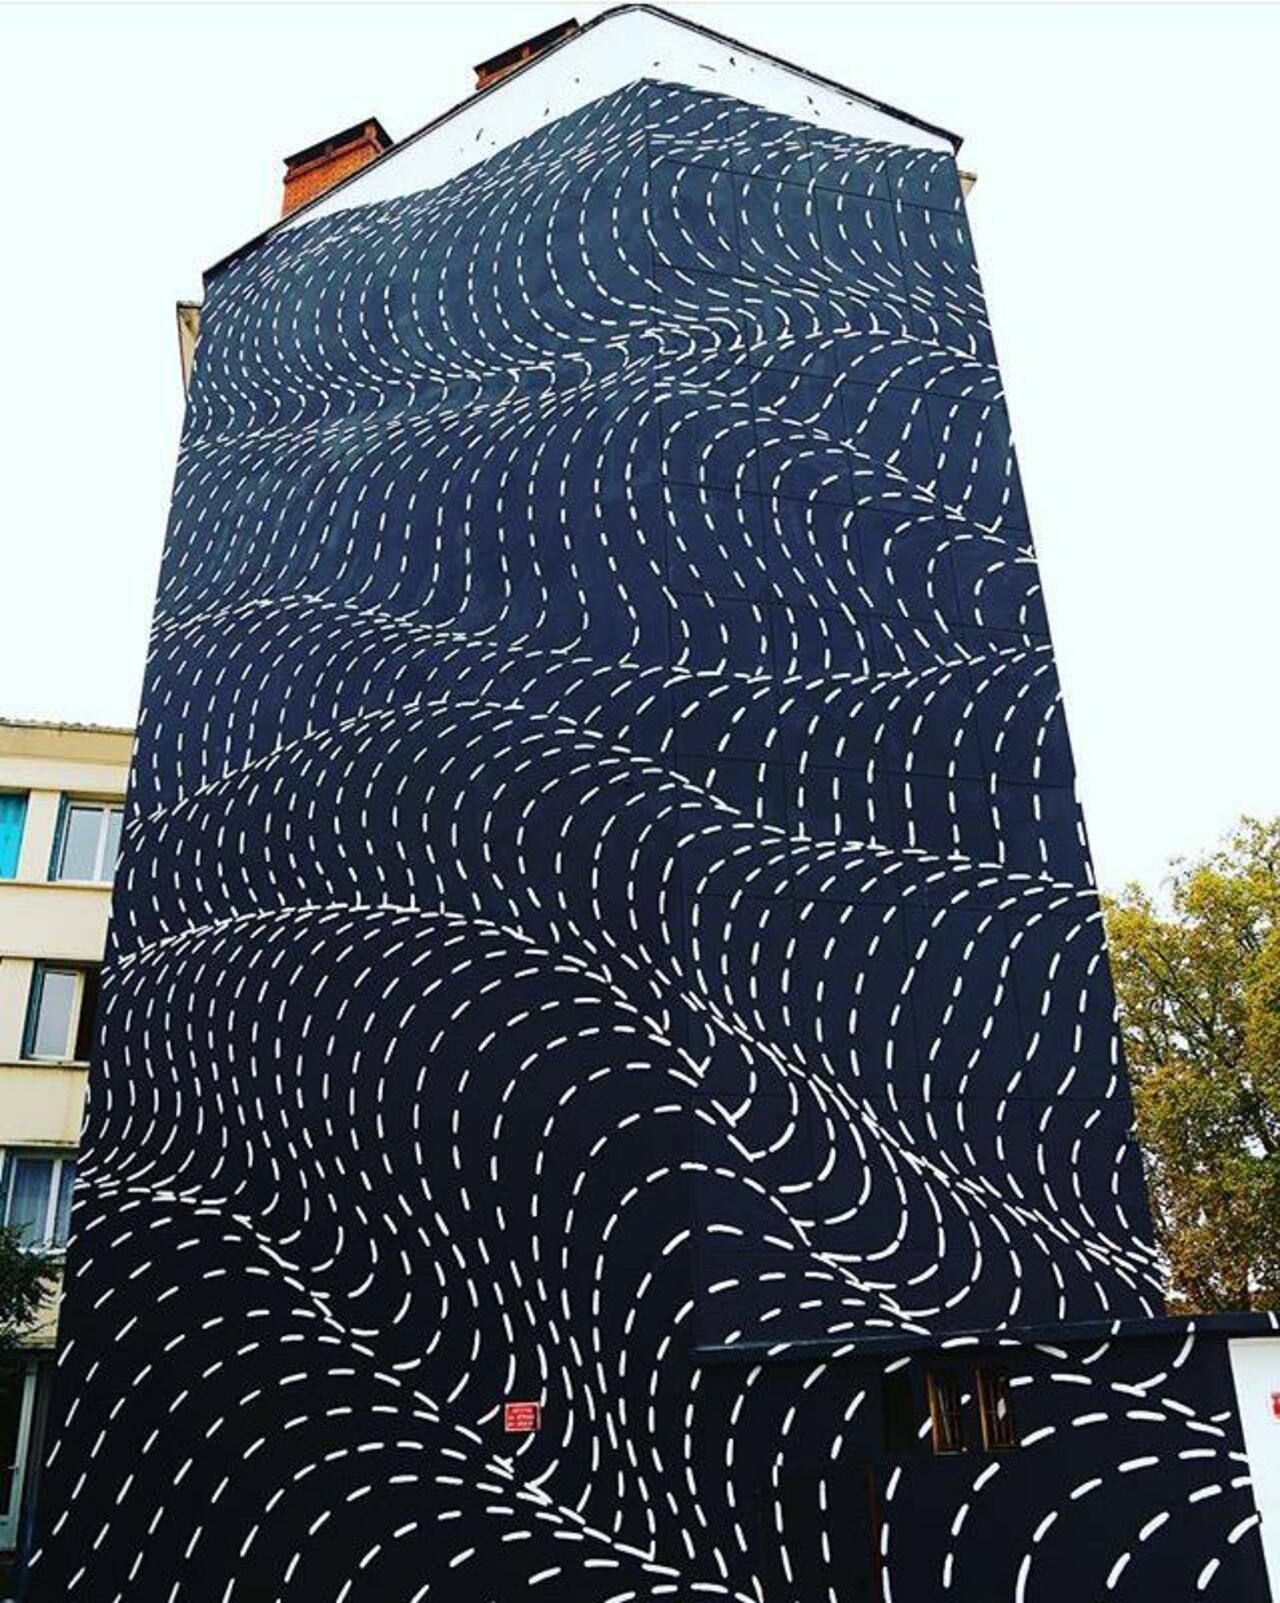 New Street Art by Brendan Monroe's for WOPS ! Festival in Toulouse, France. 

#art #graffiti #mural #streetart https://t.co/FuMbnNA9tG